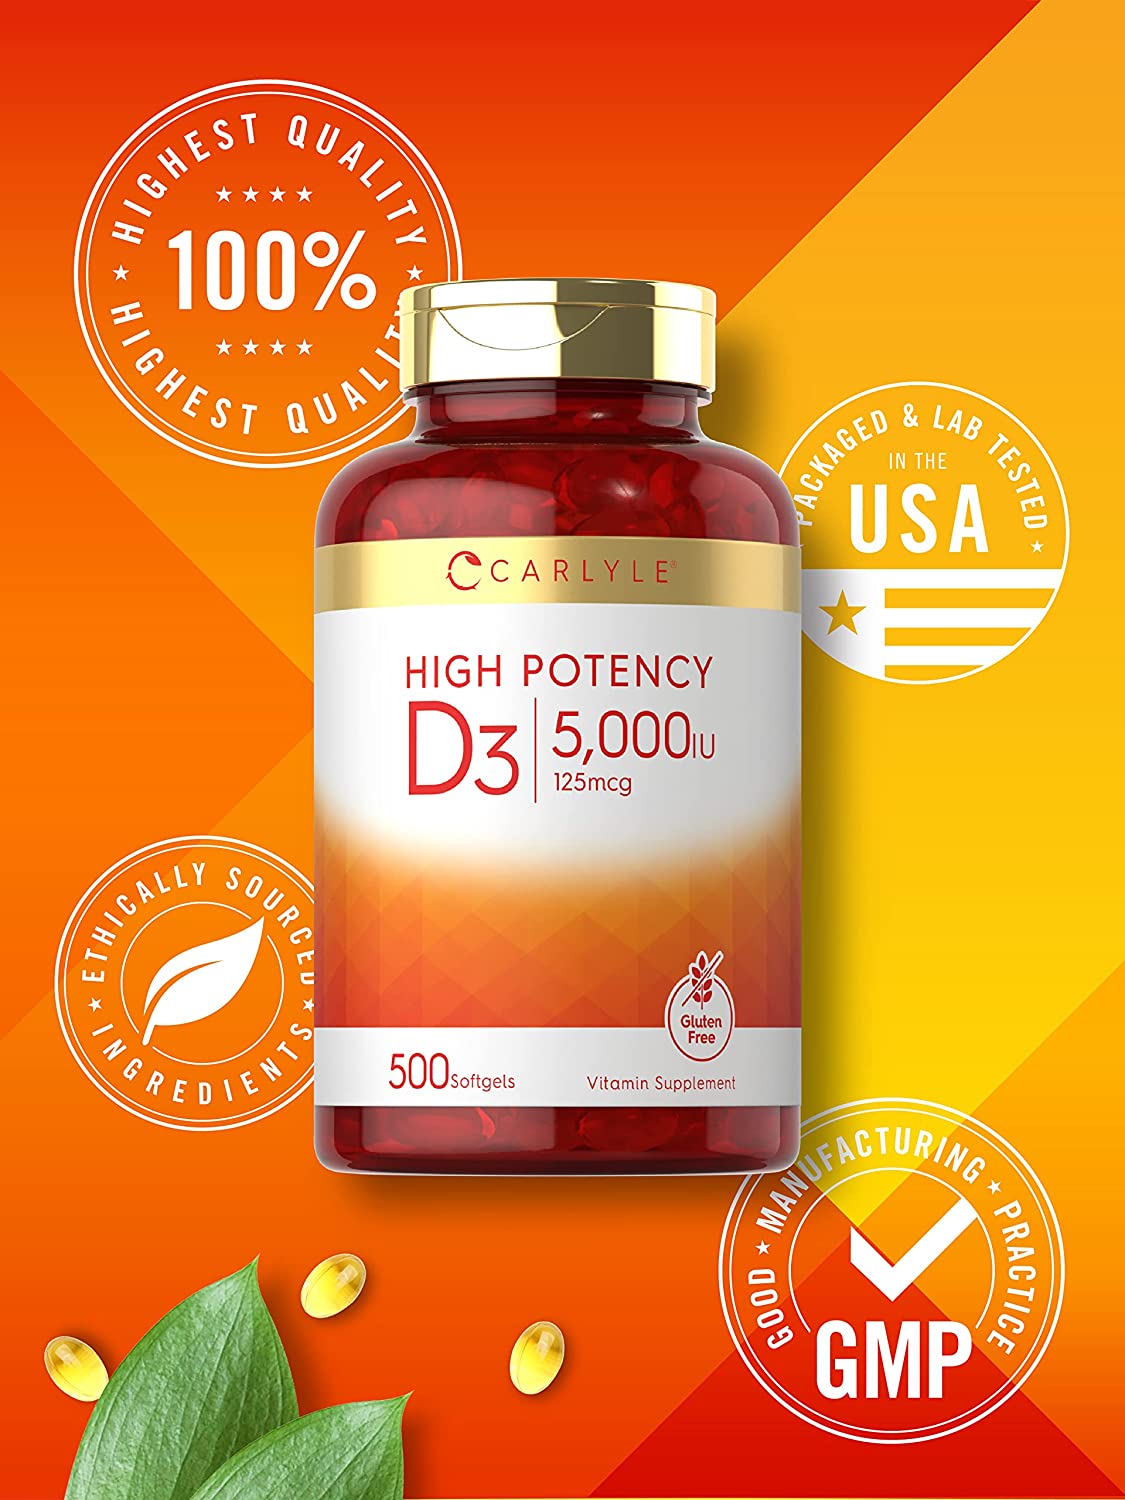 Vitamina D3 5000 UI | 500 cápsulas blandas